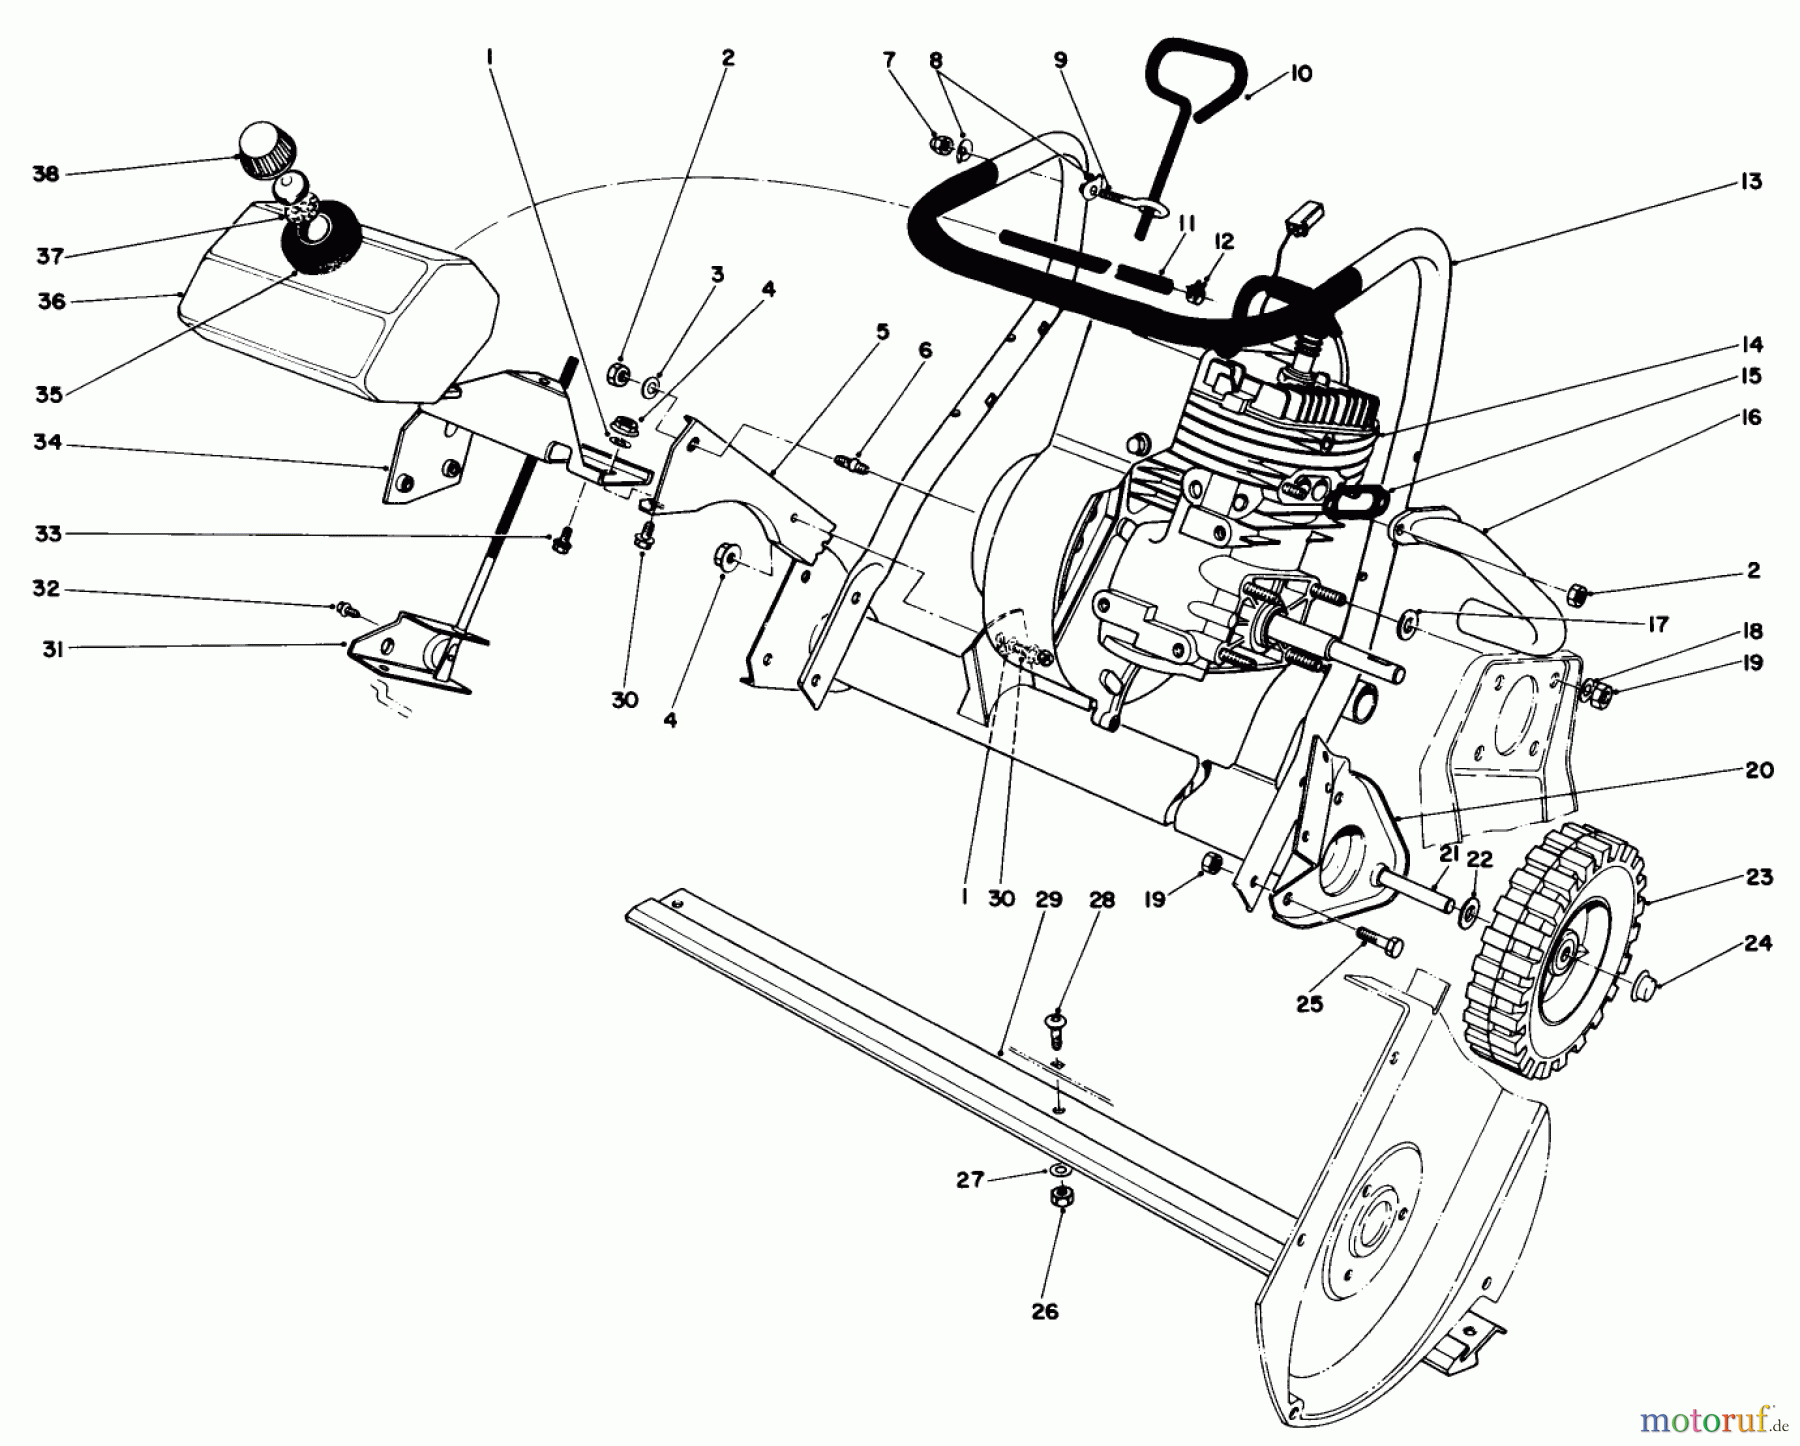  Toro Neu Snow Blowers/Snow Throwers Seite 1 38165 (S-620) - Toro S-620 Snowthrower, 1989 (9000001-9999999) ENGINE ASSEMBLY